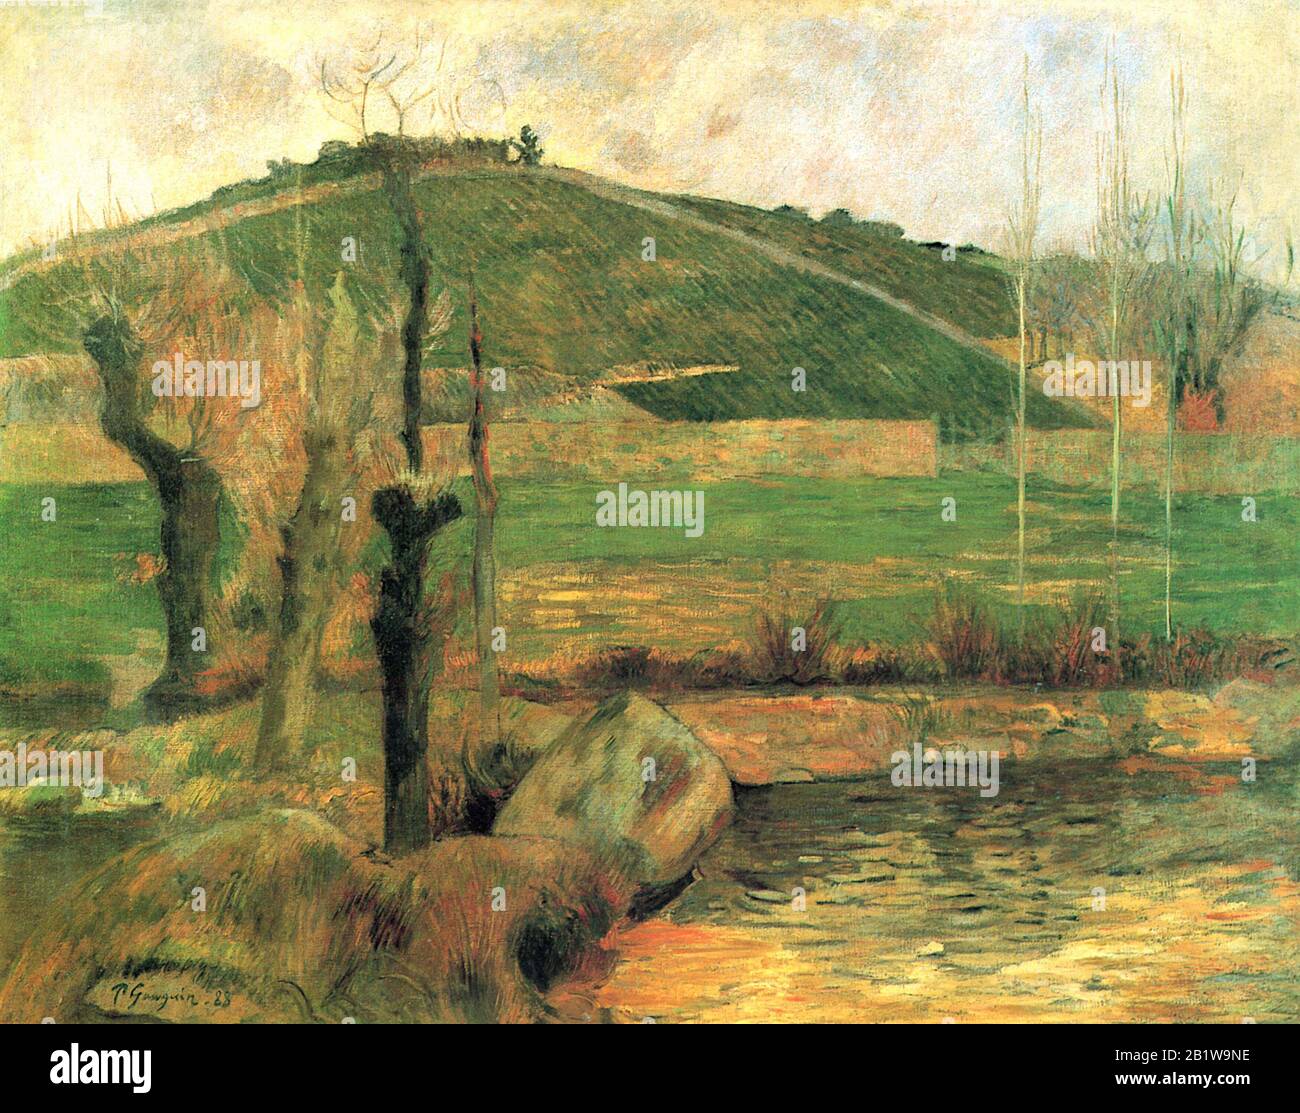 Landschaft in der Nähe von Pont-Aven (L'Aven Unterhalb des Mont-Sainte-Marguerite) (im Jahre 1888) Gemälde des 19. Jahrhunderts von Paul Gauguin - Sehr hohe Auflösung und hochwertige Bilder Stockfoto